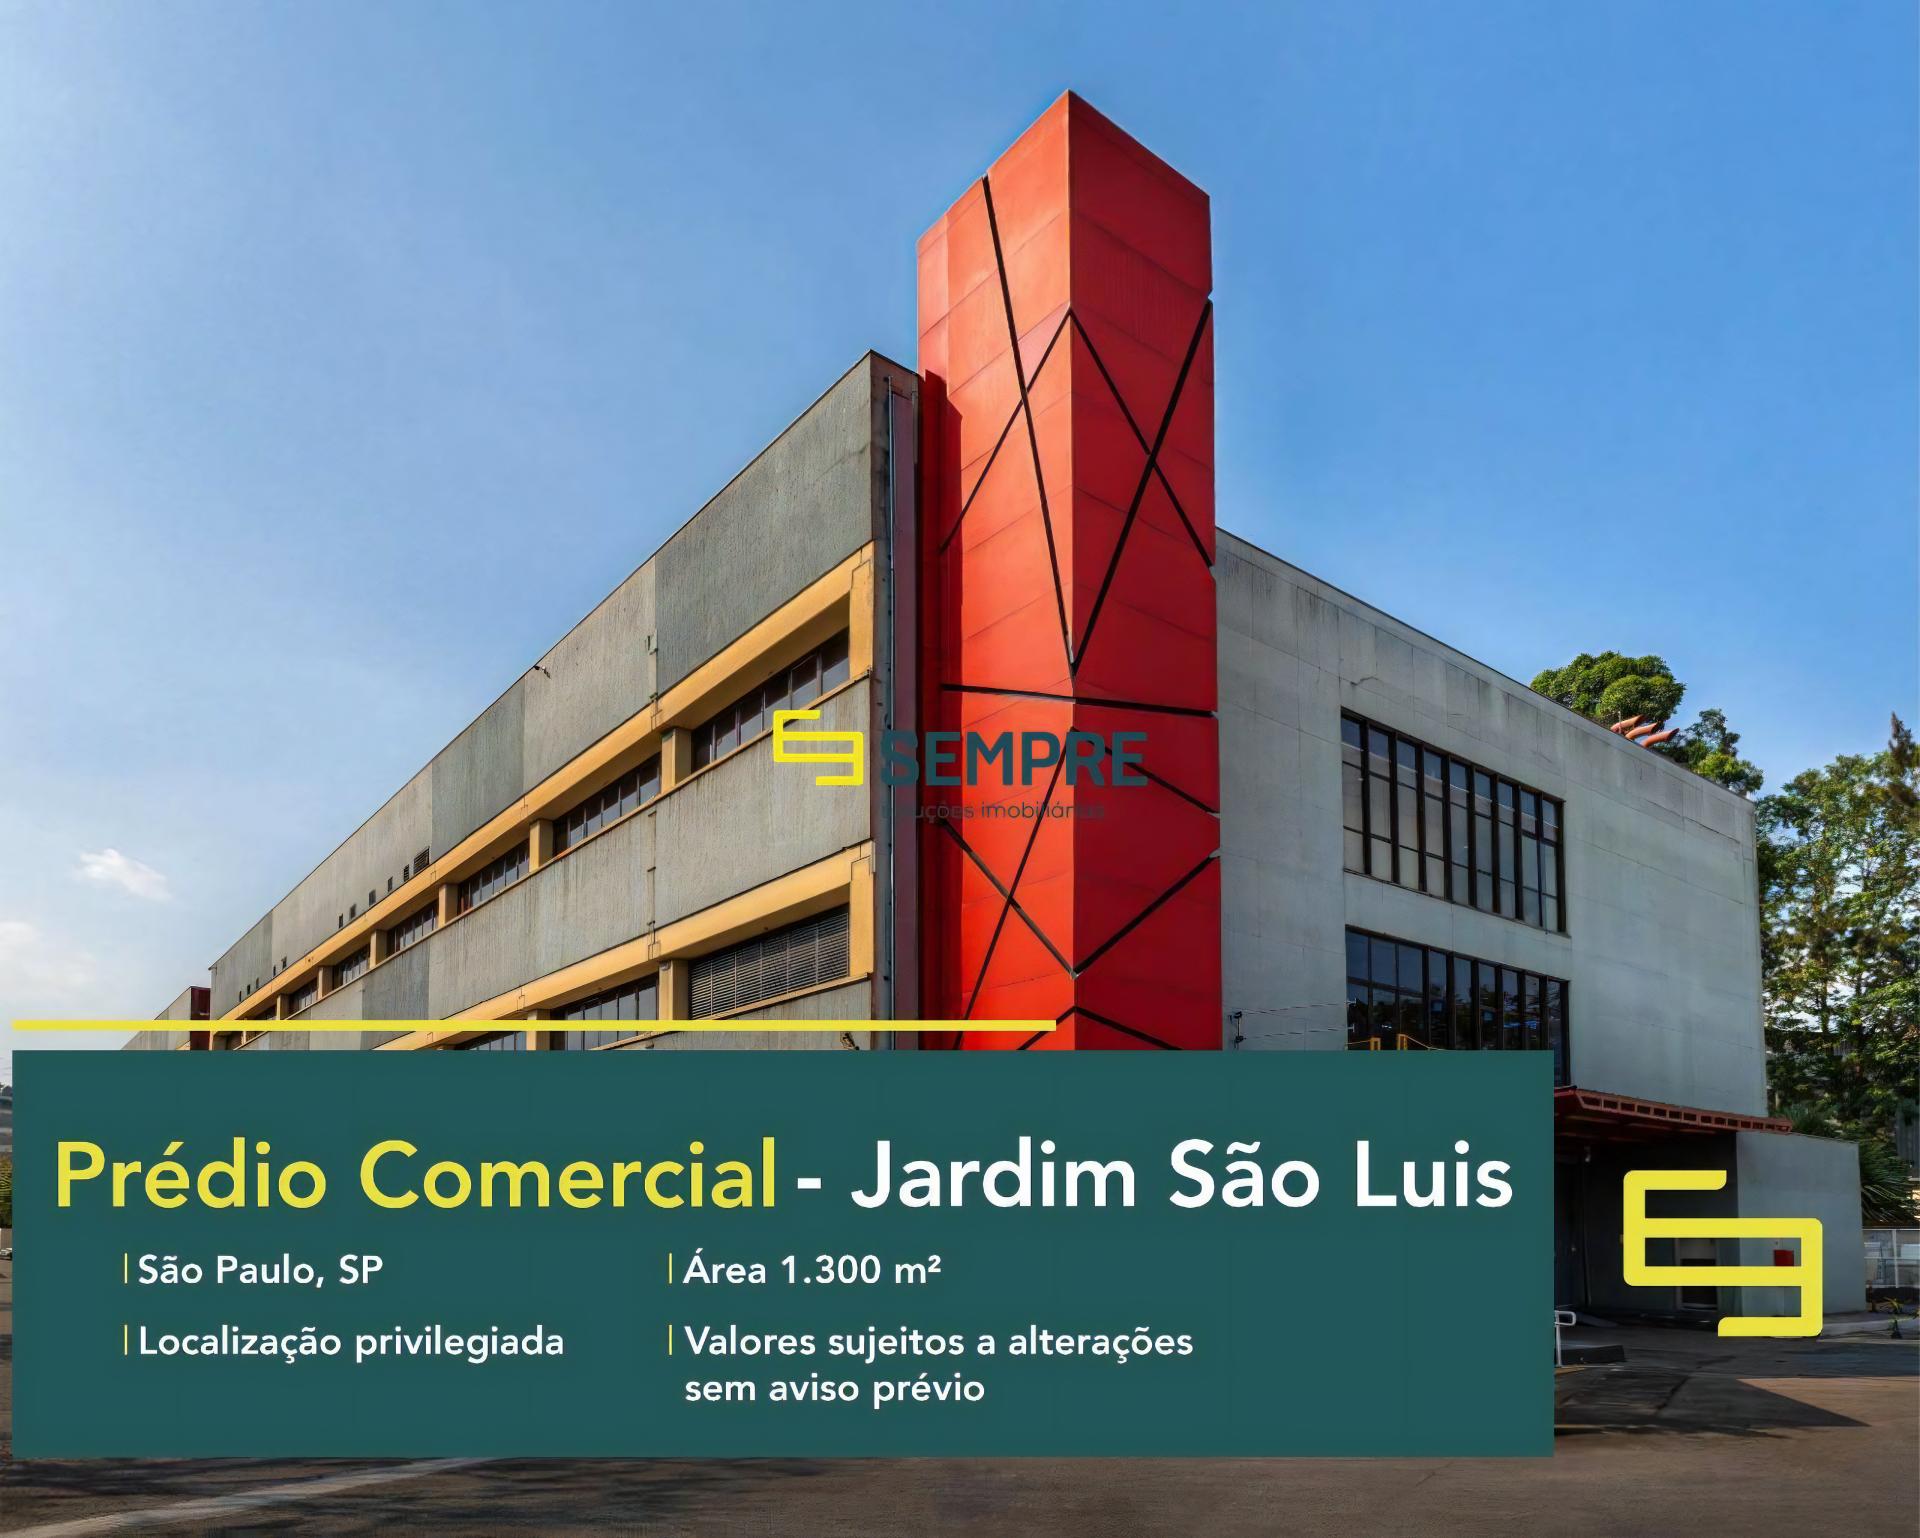 Prédio comercial no Jardim São Luis para alugar em São Paulo, excelente localização. O estabelecimento comercial conta com área de 1.300 m².